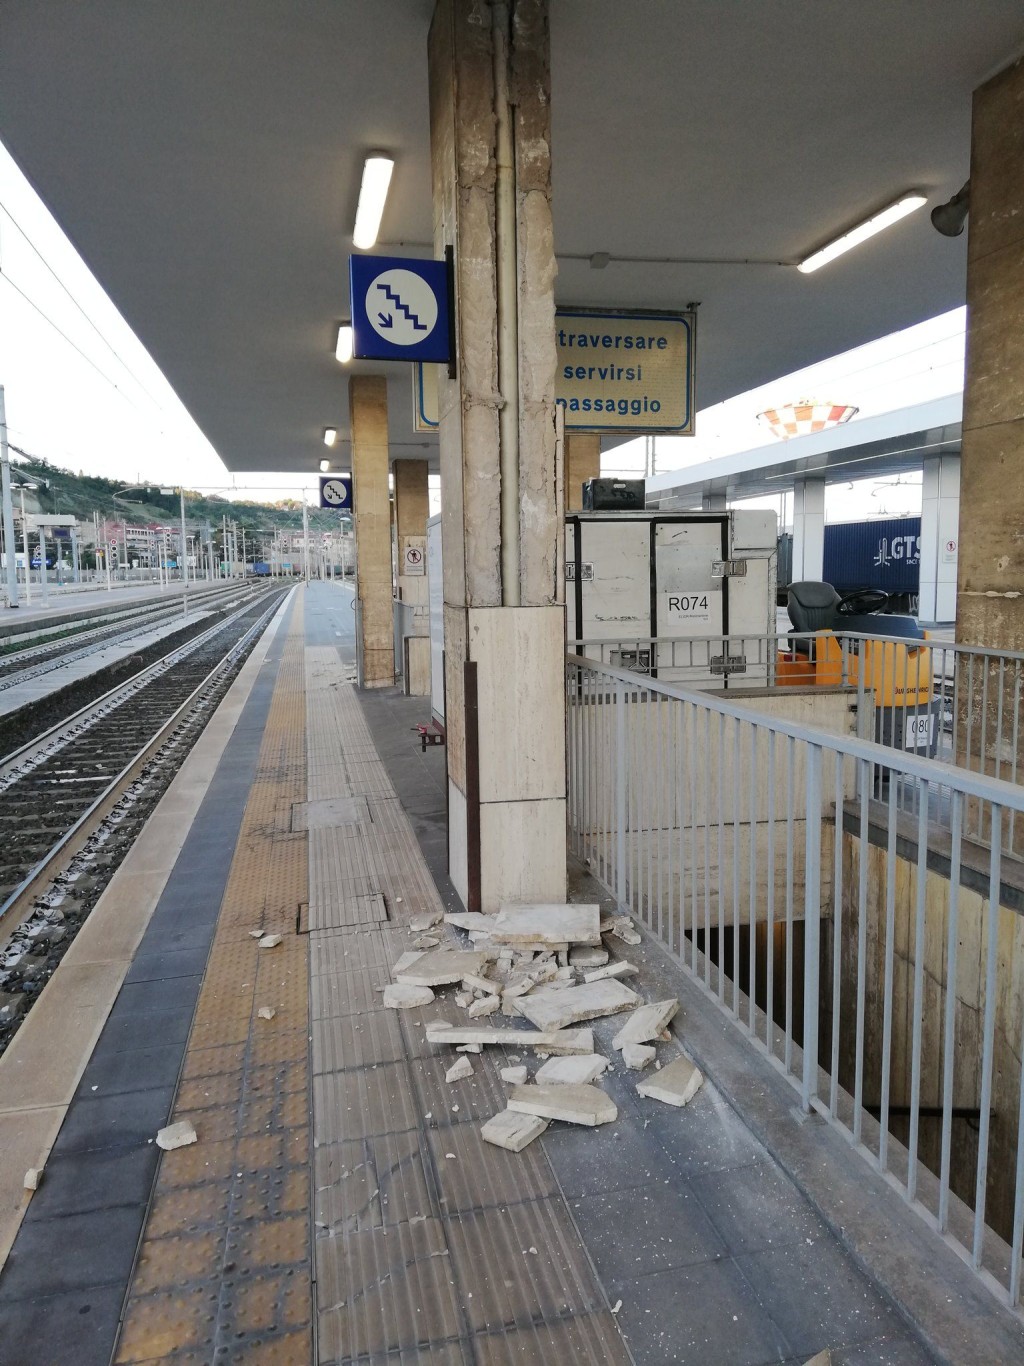 地铁站月台上也有疑似柱子掉落的碎片。网图